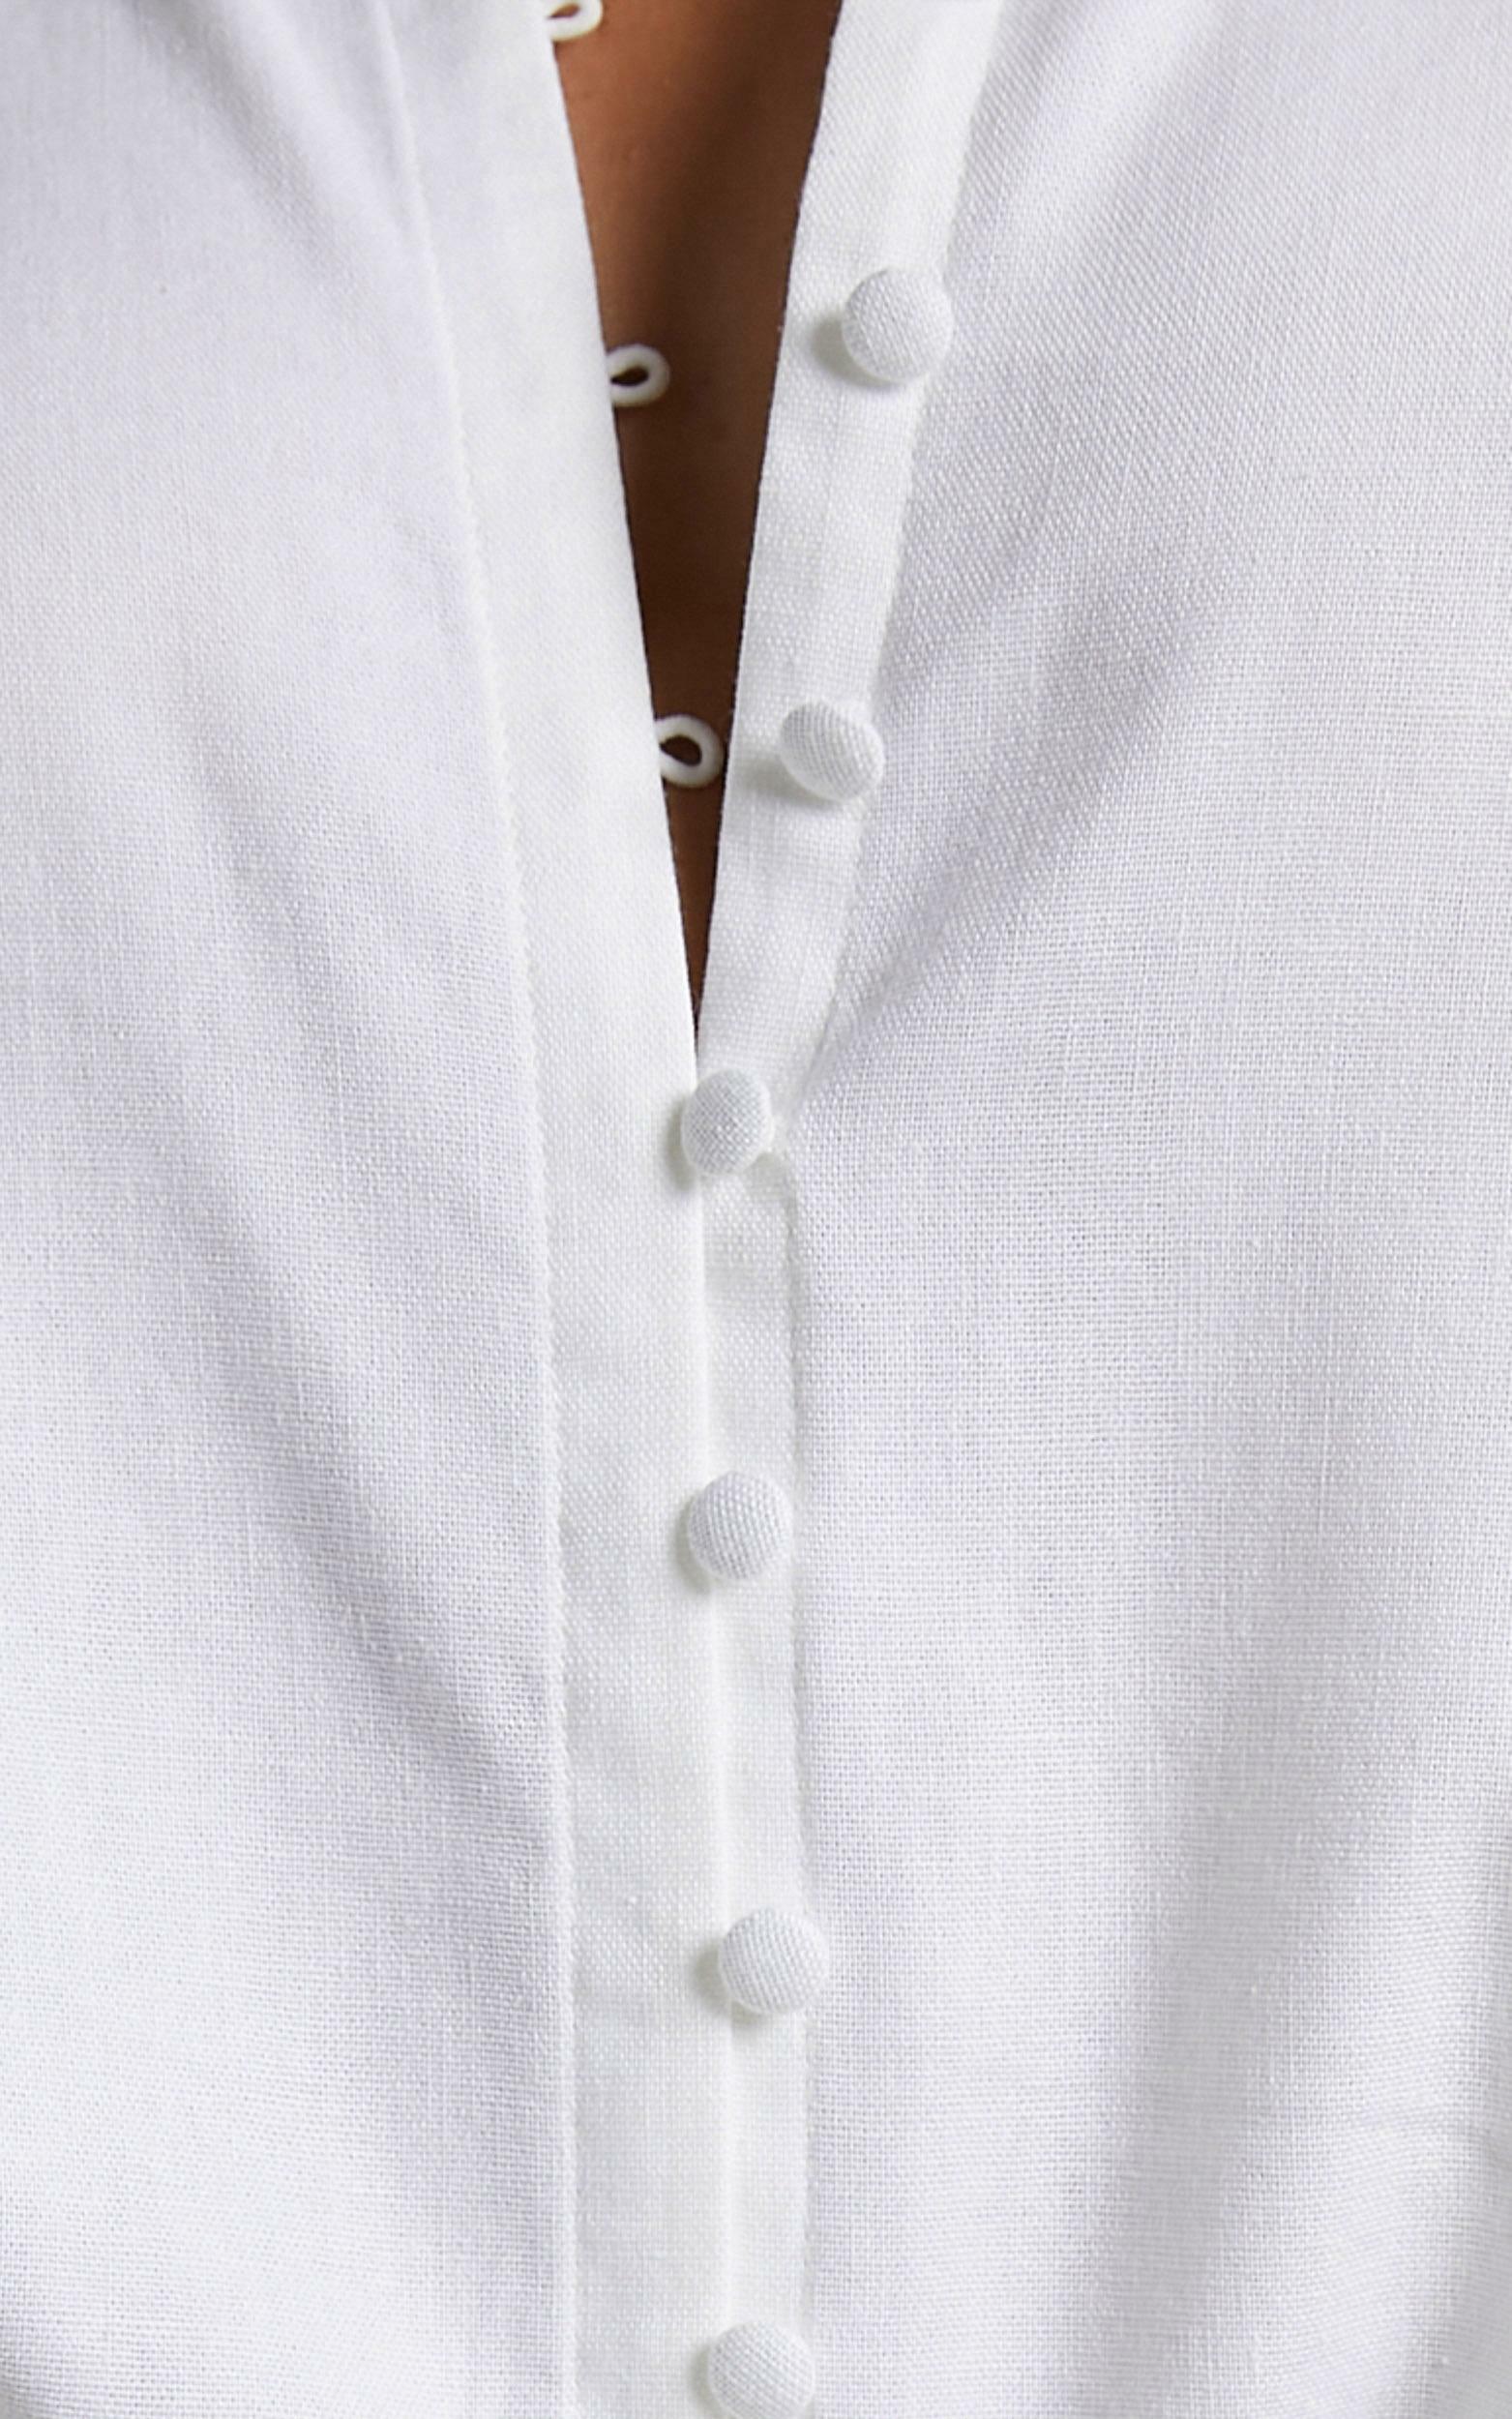 Kiva Long Sleeve Blouse in White | Showpo